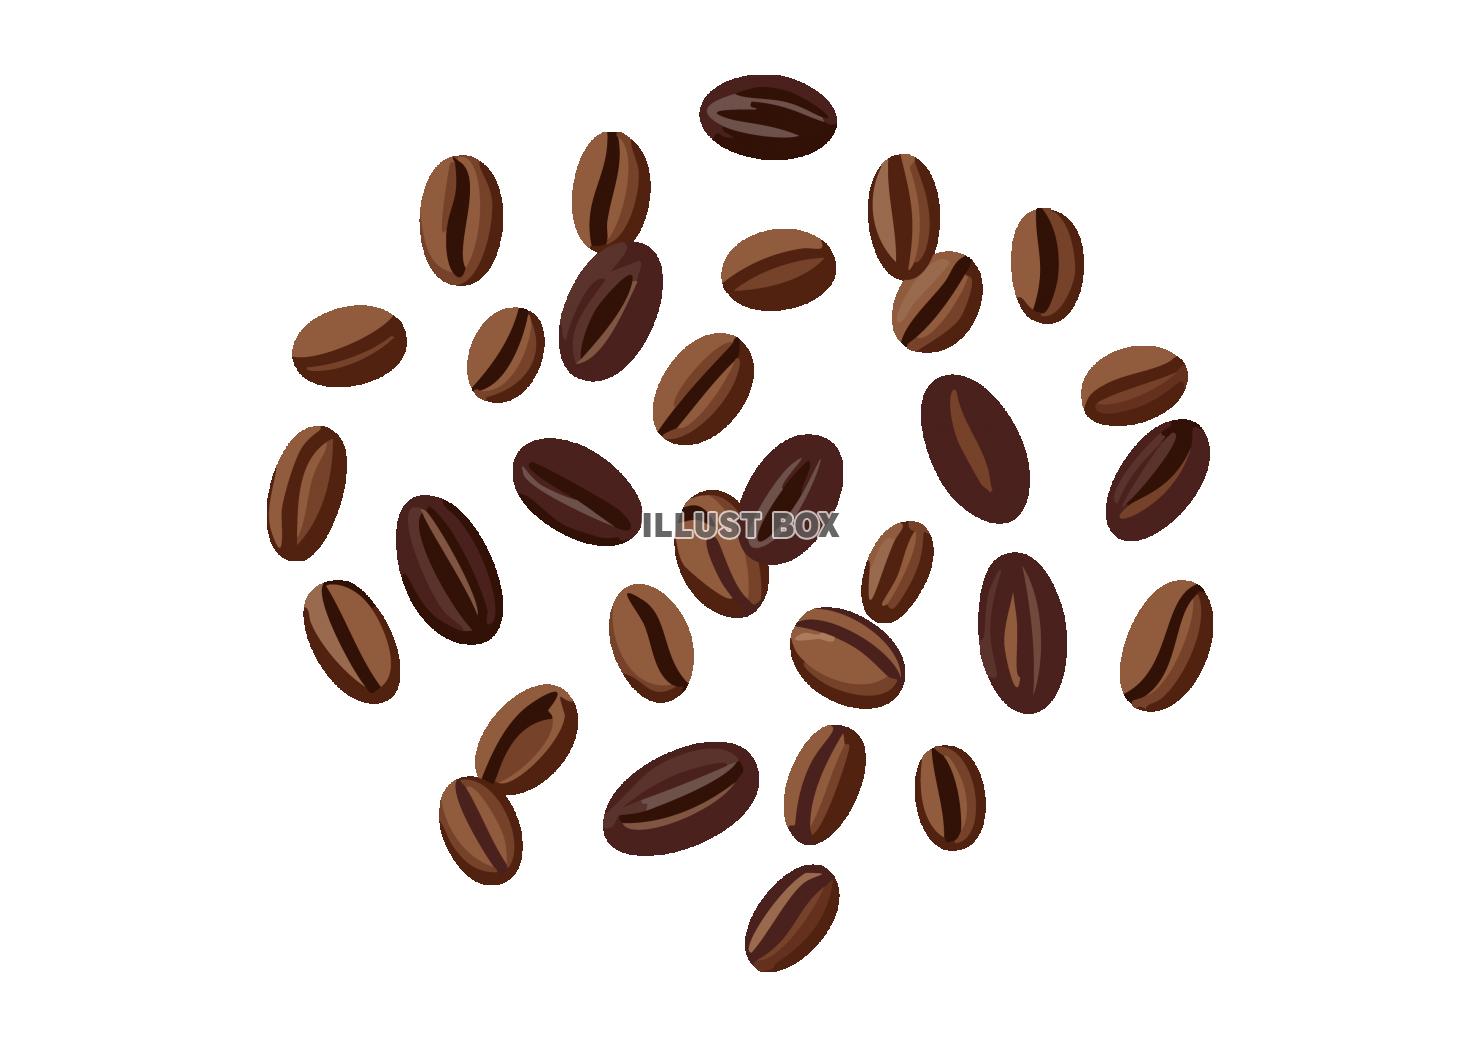 散らばったコーヒー豆のイラスト素材